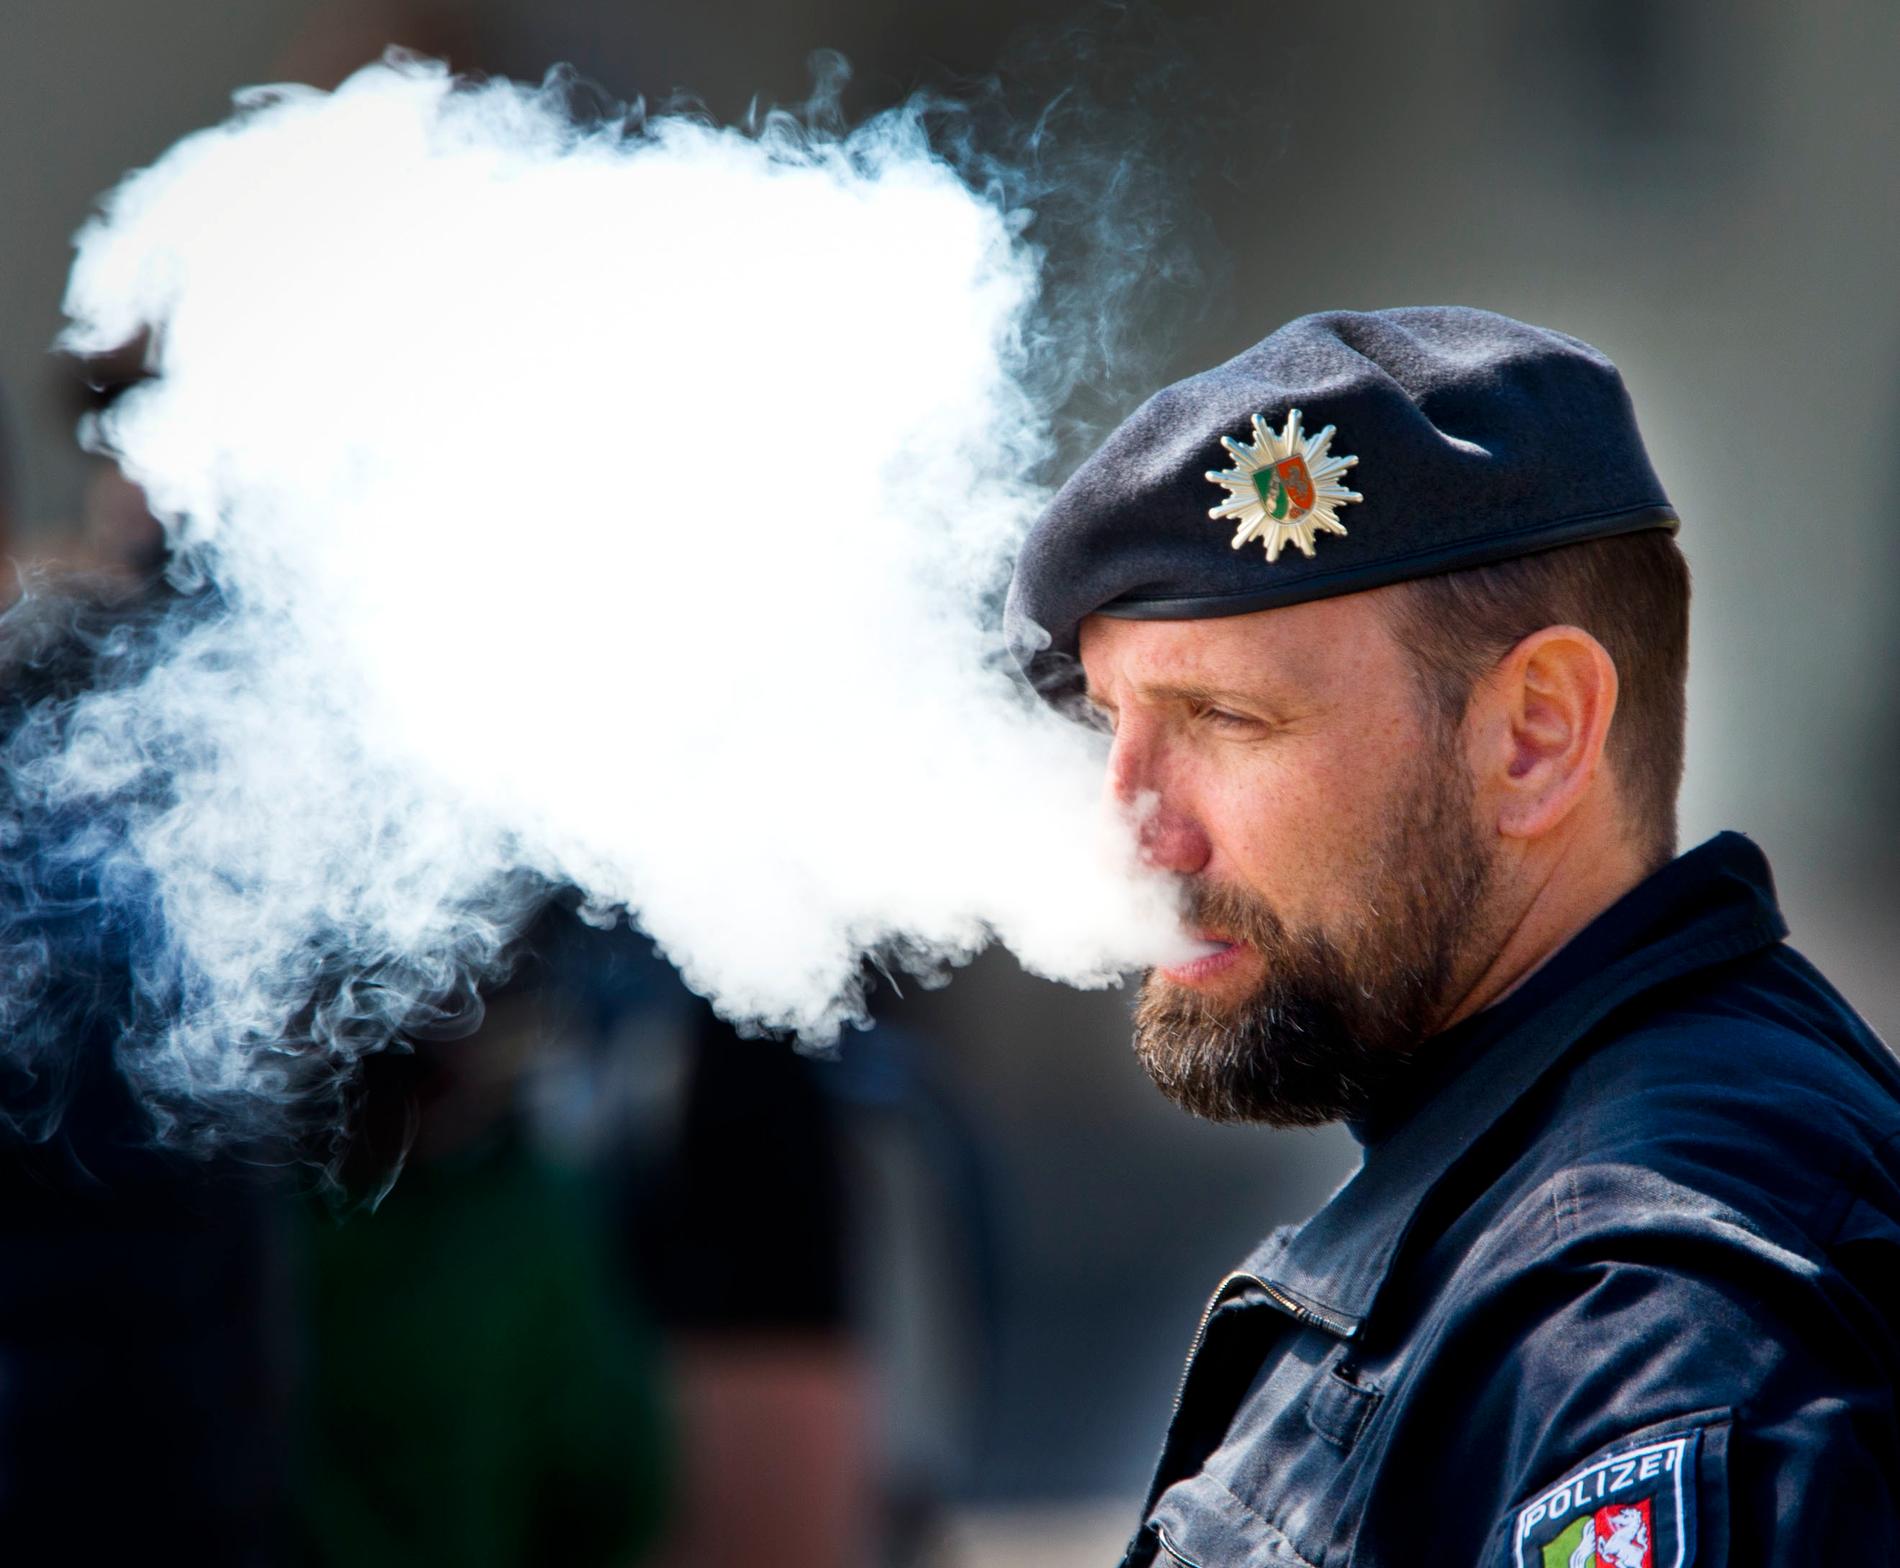 En polisman blåser ut rök från en e-cigarett under ceremonin då Karl Marx-statyn avtäcktes i tyska Trier på lördagen.